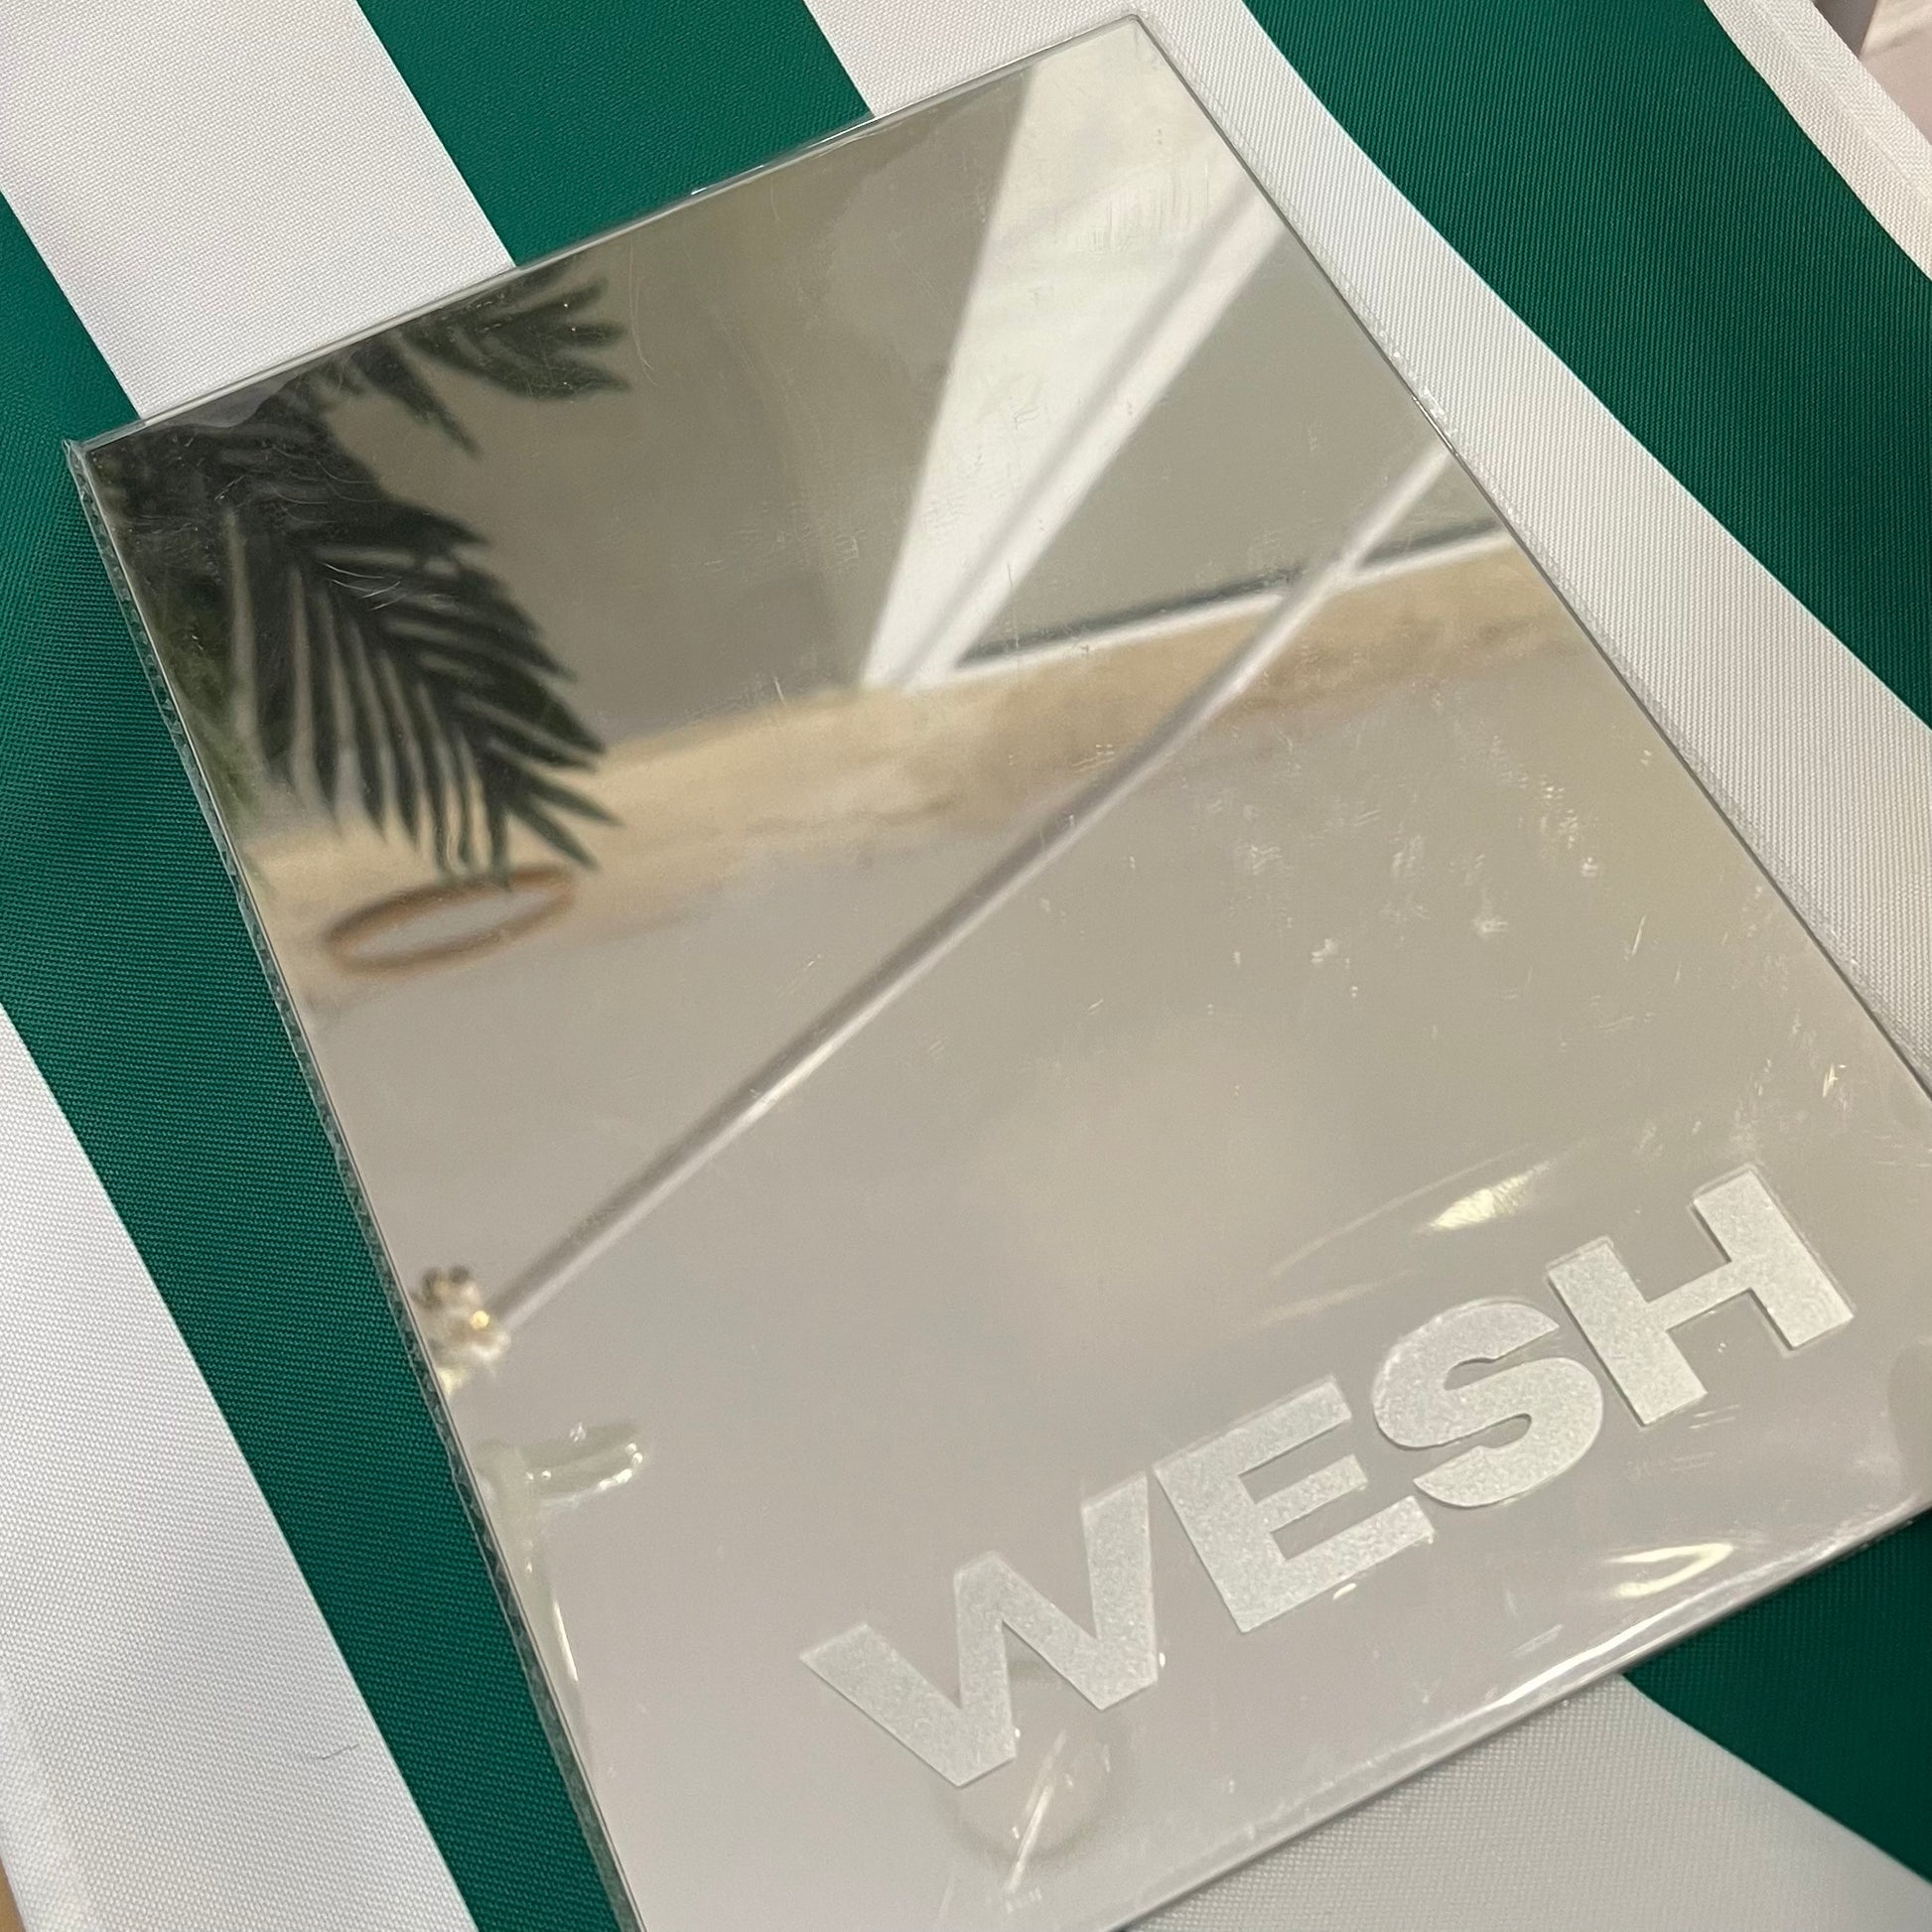 Un miroir A4 stylé affichant l'expression urbaine 'Wesh'.